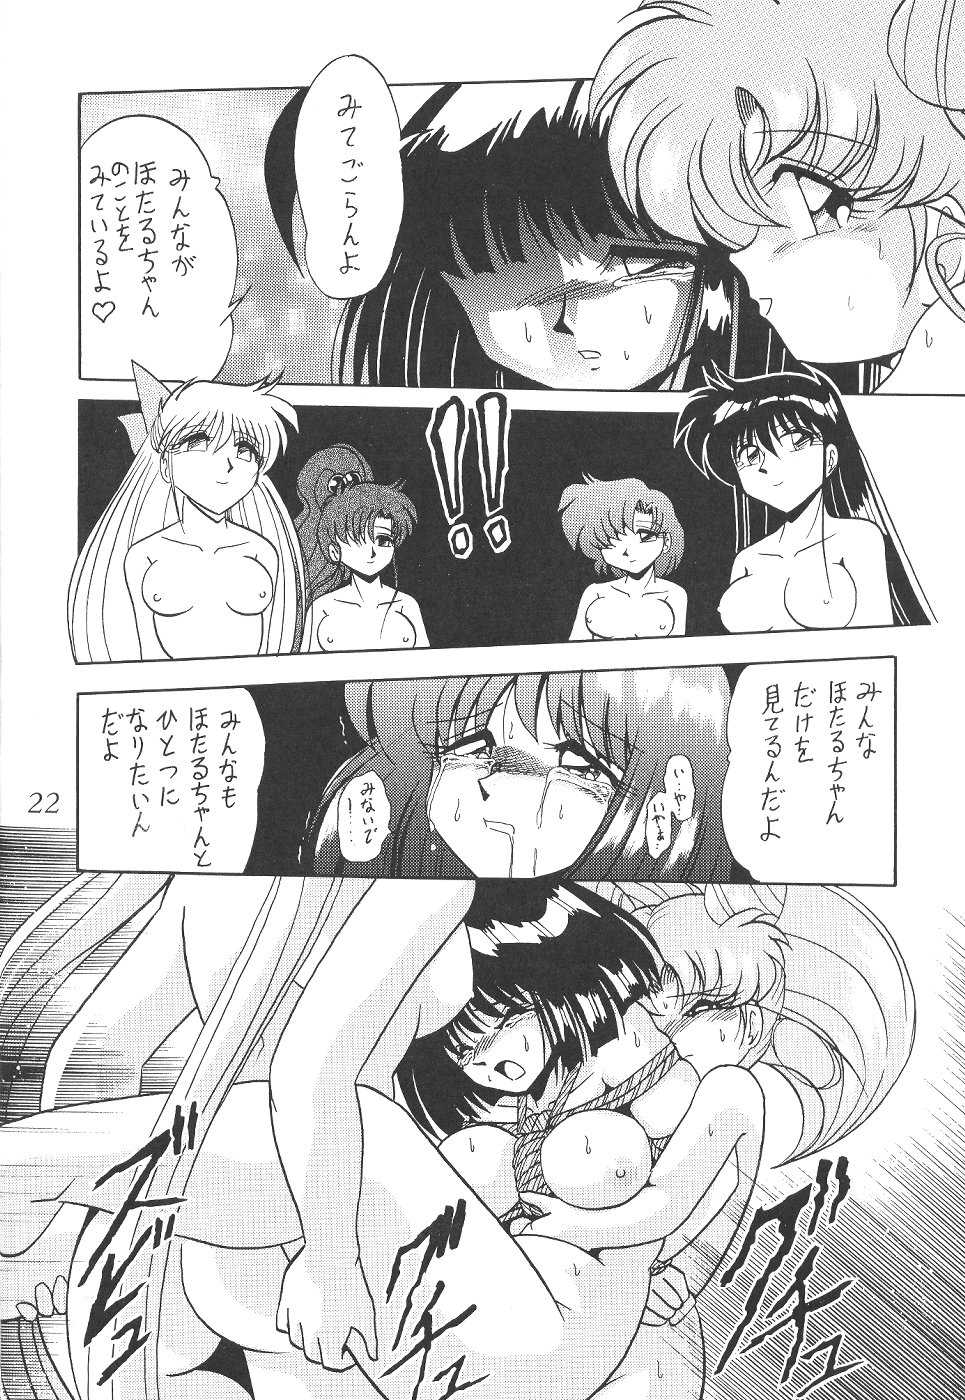 Saateiseibaazutoriito 2D Shooting - Silent Saturn 12 (Sailor Moon) 